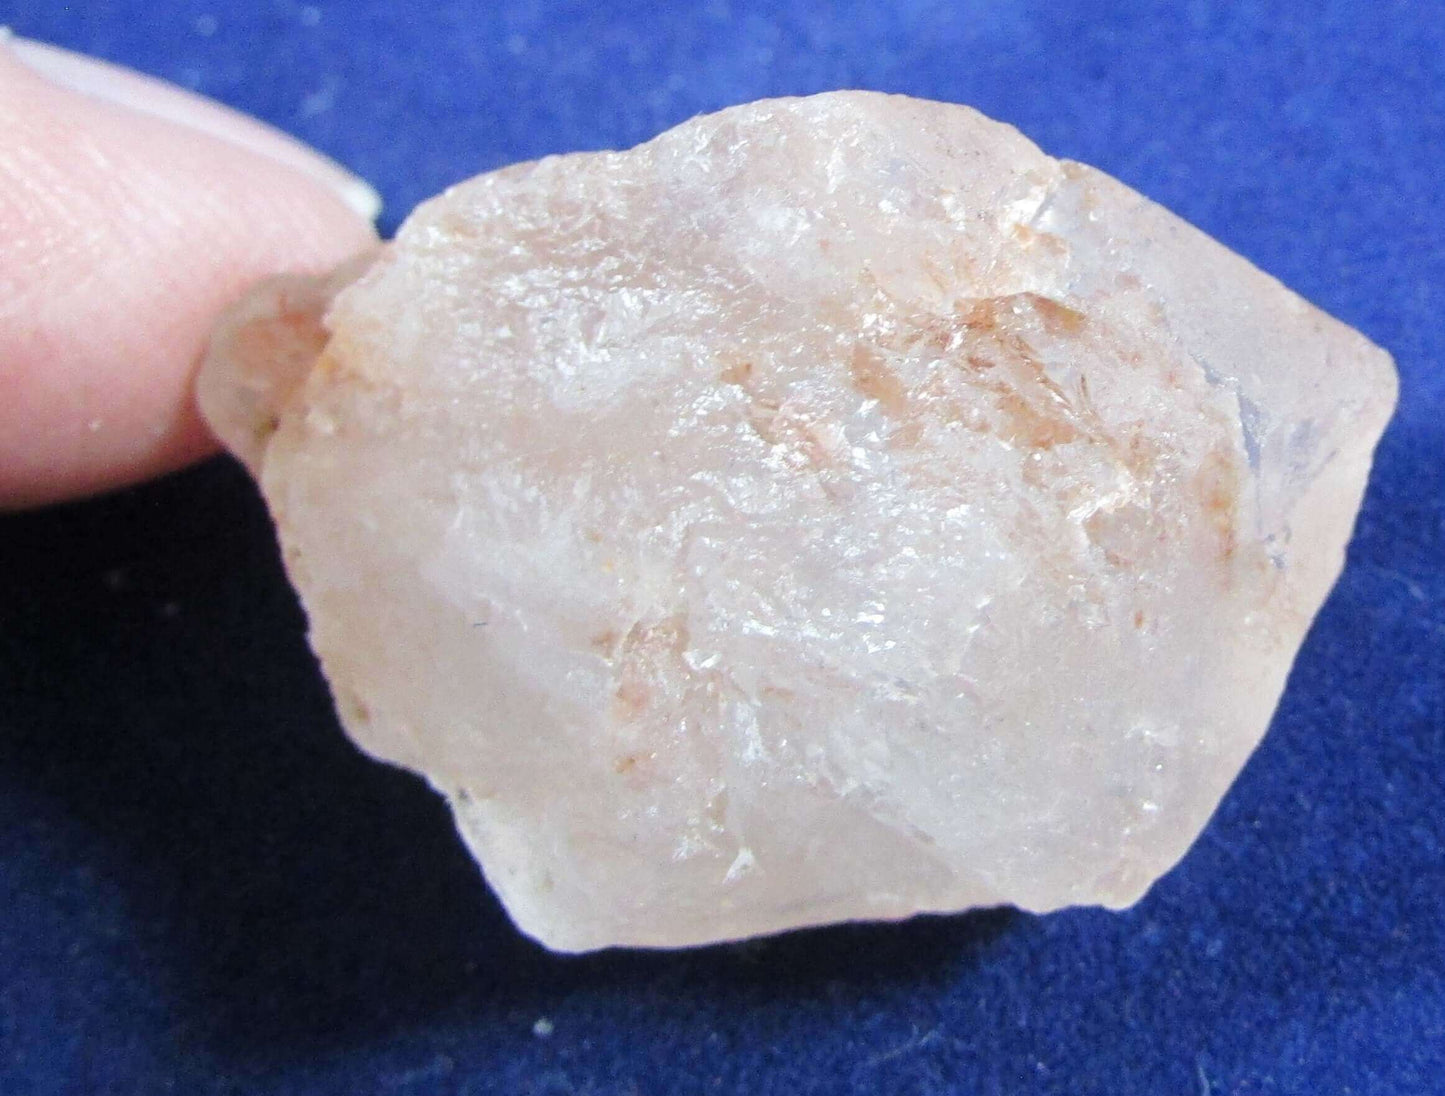 Nirvana Quartz Crystal, Samadhi Quartz, Himalayan Quartz